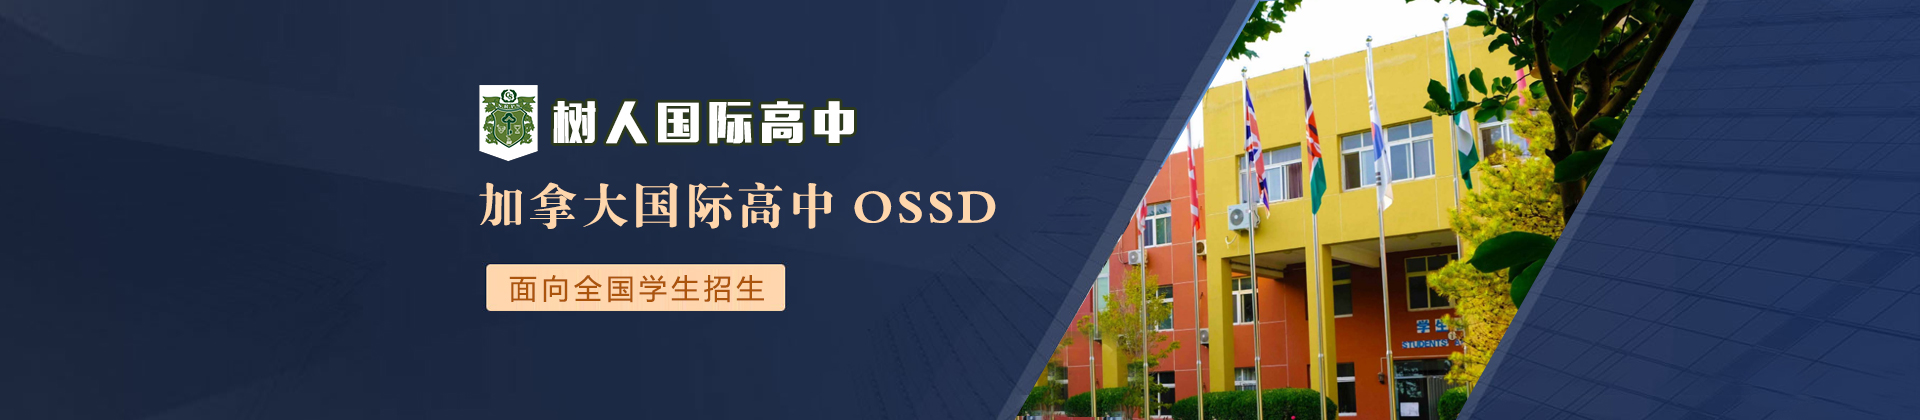 北京树人国际学校加拿大OSSD